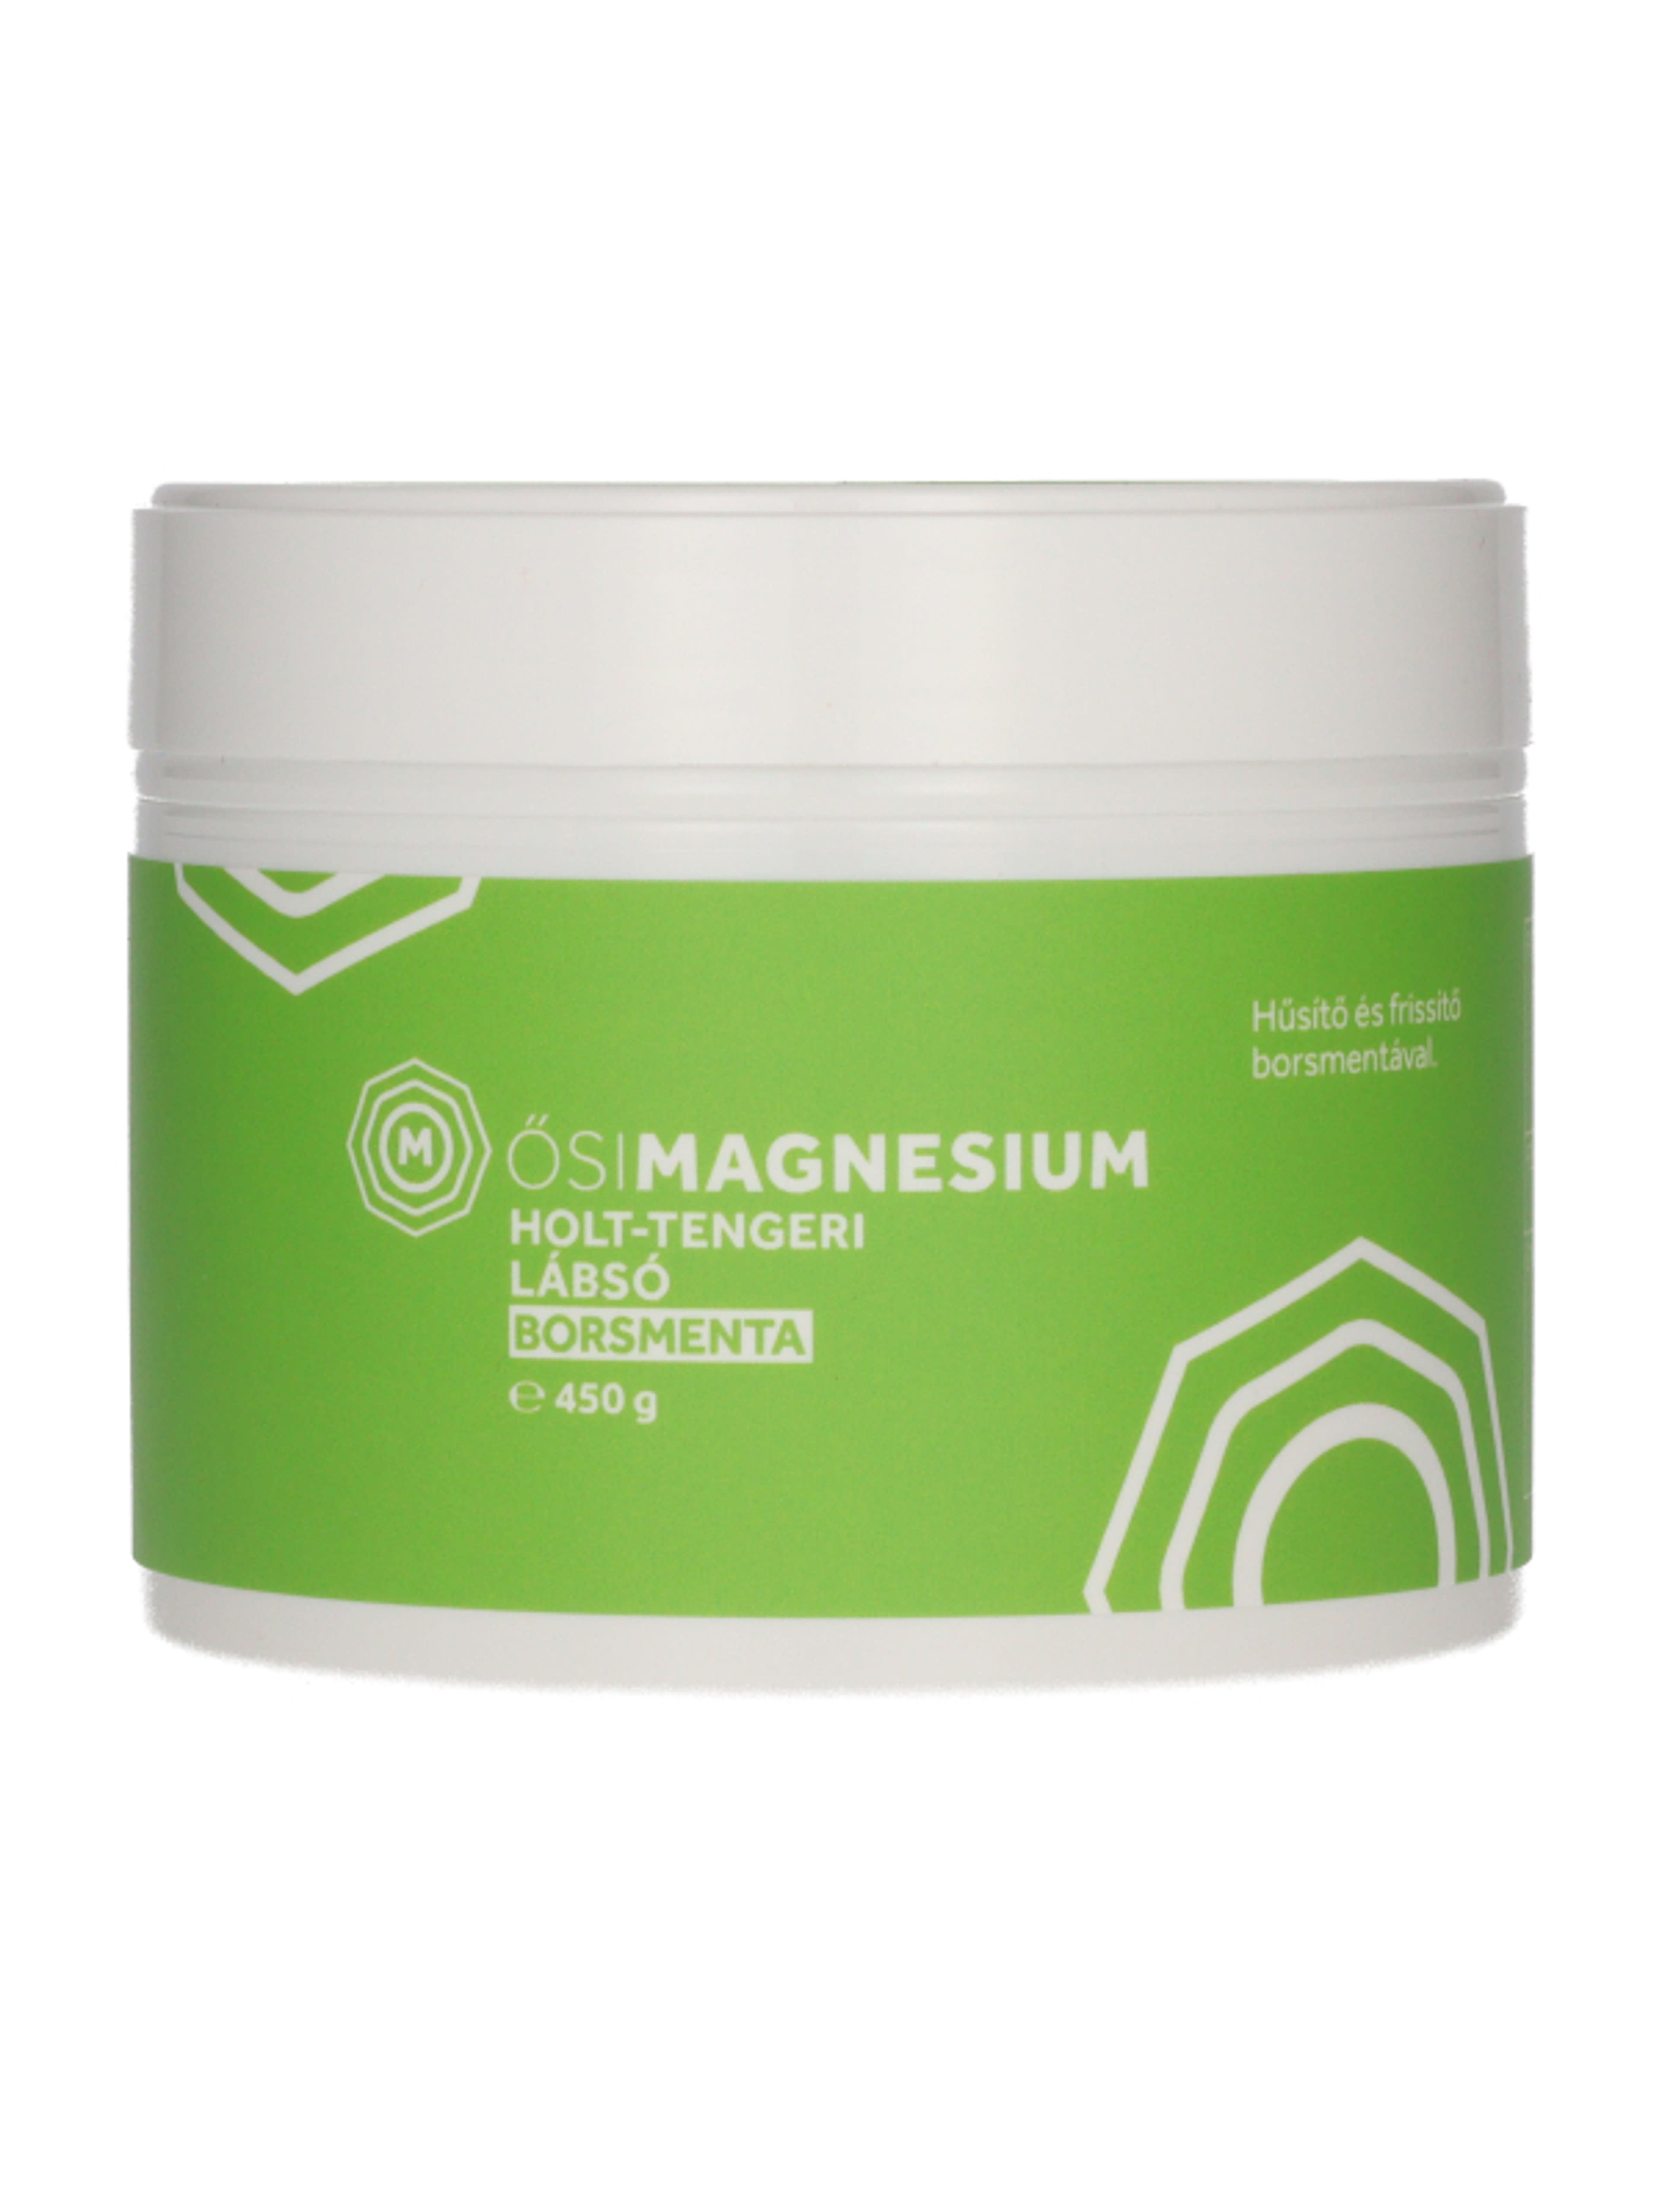 Ősi Magnesium Holt-tengeri lábsó borsmentás - 450 g-2